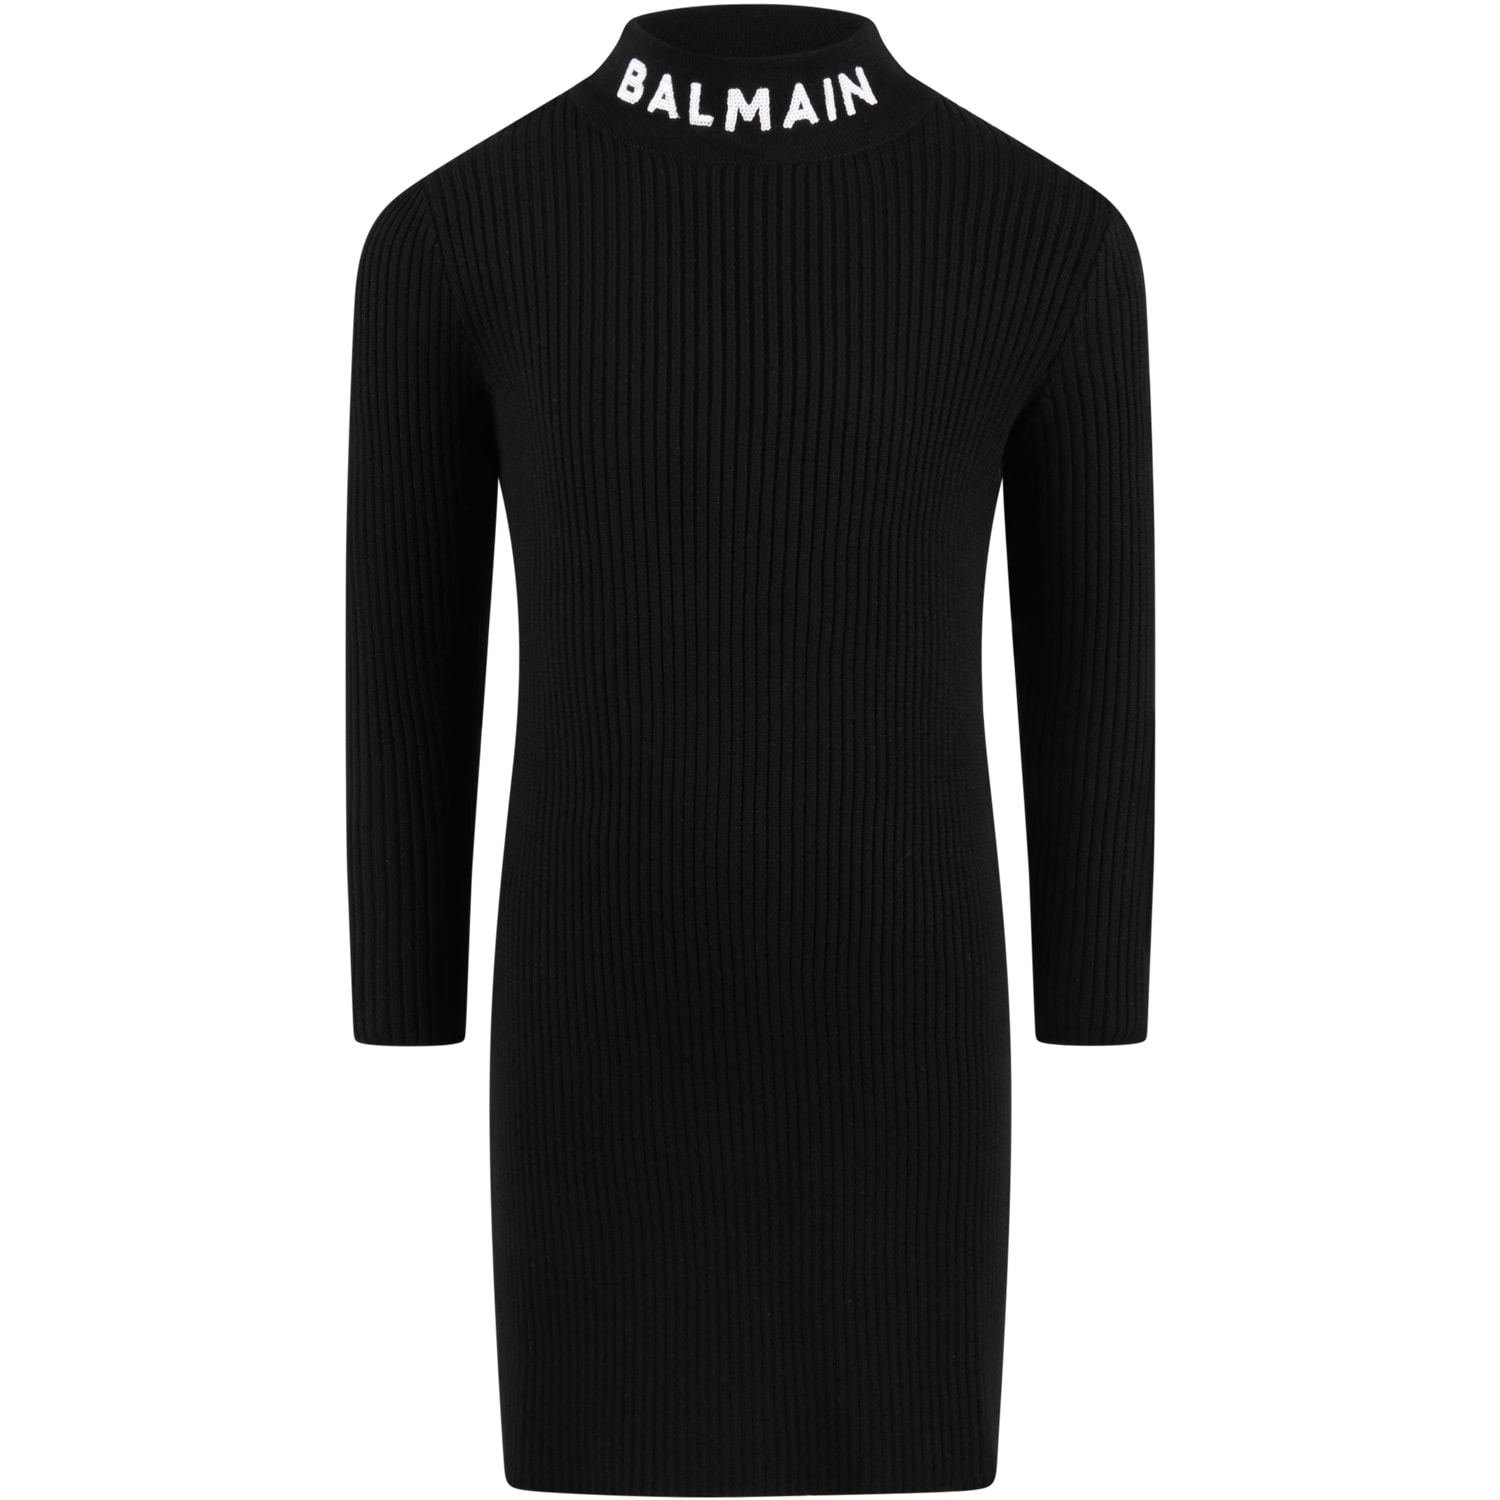 Balmain Black Dress For Girl With White Logo